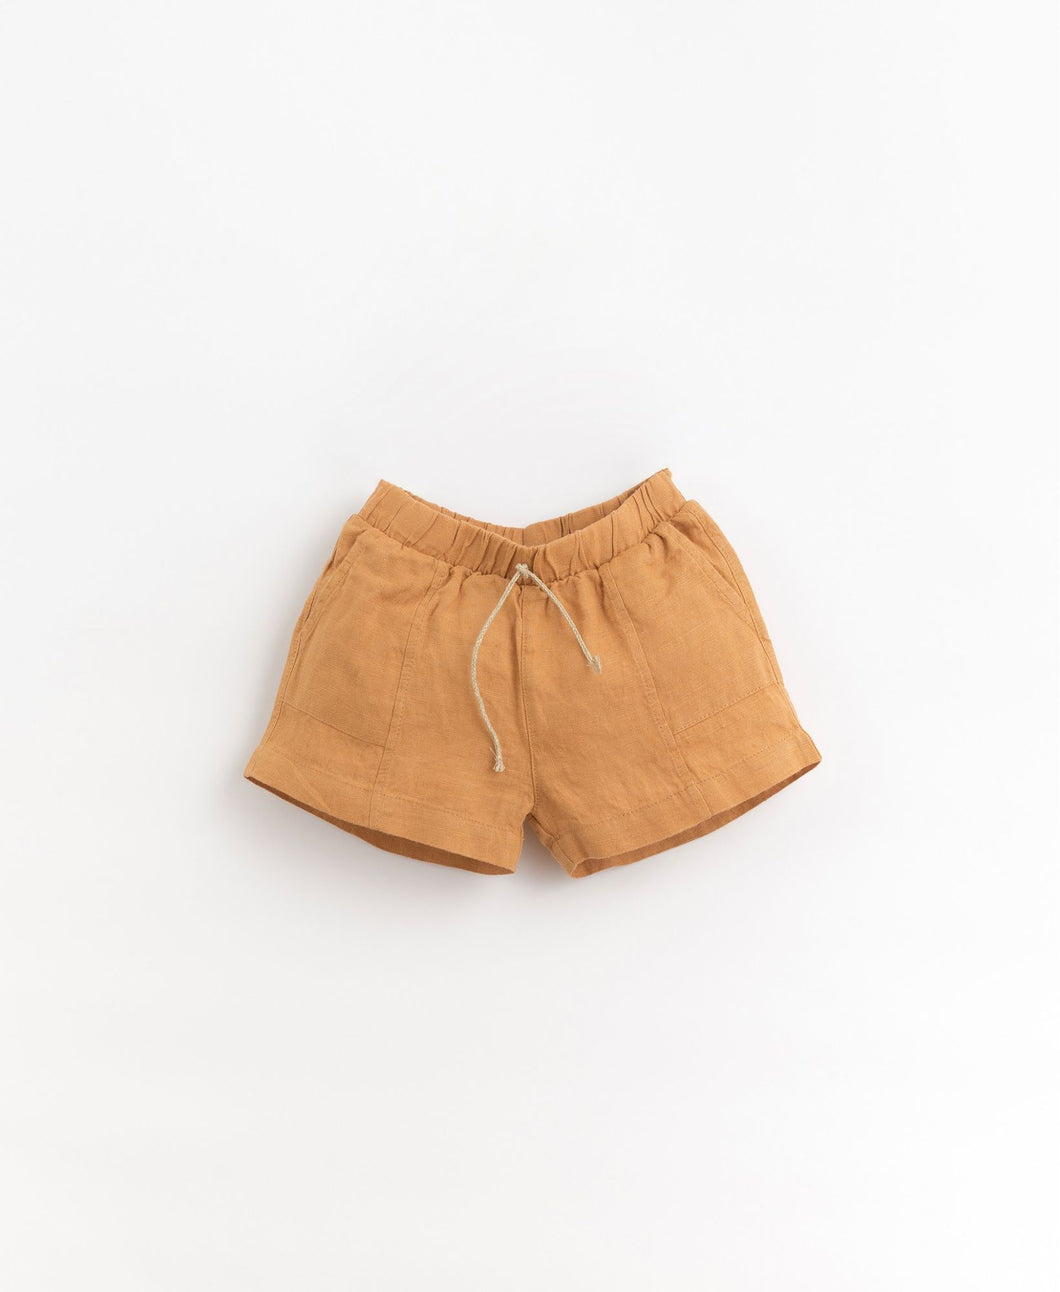 Pantalón corto lino marrón de Play Up